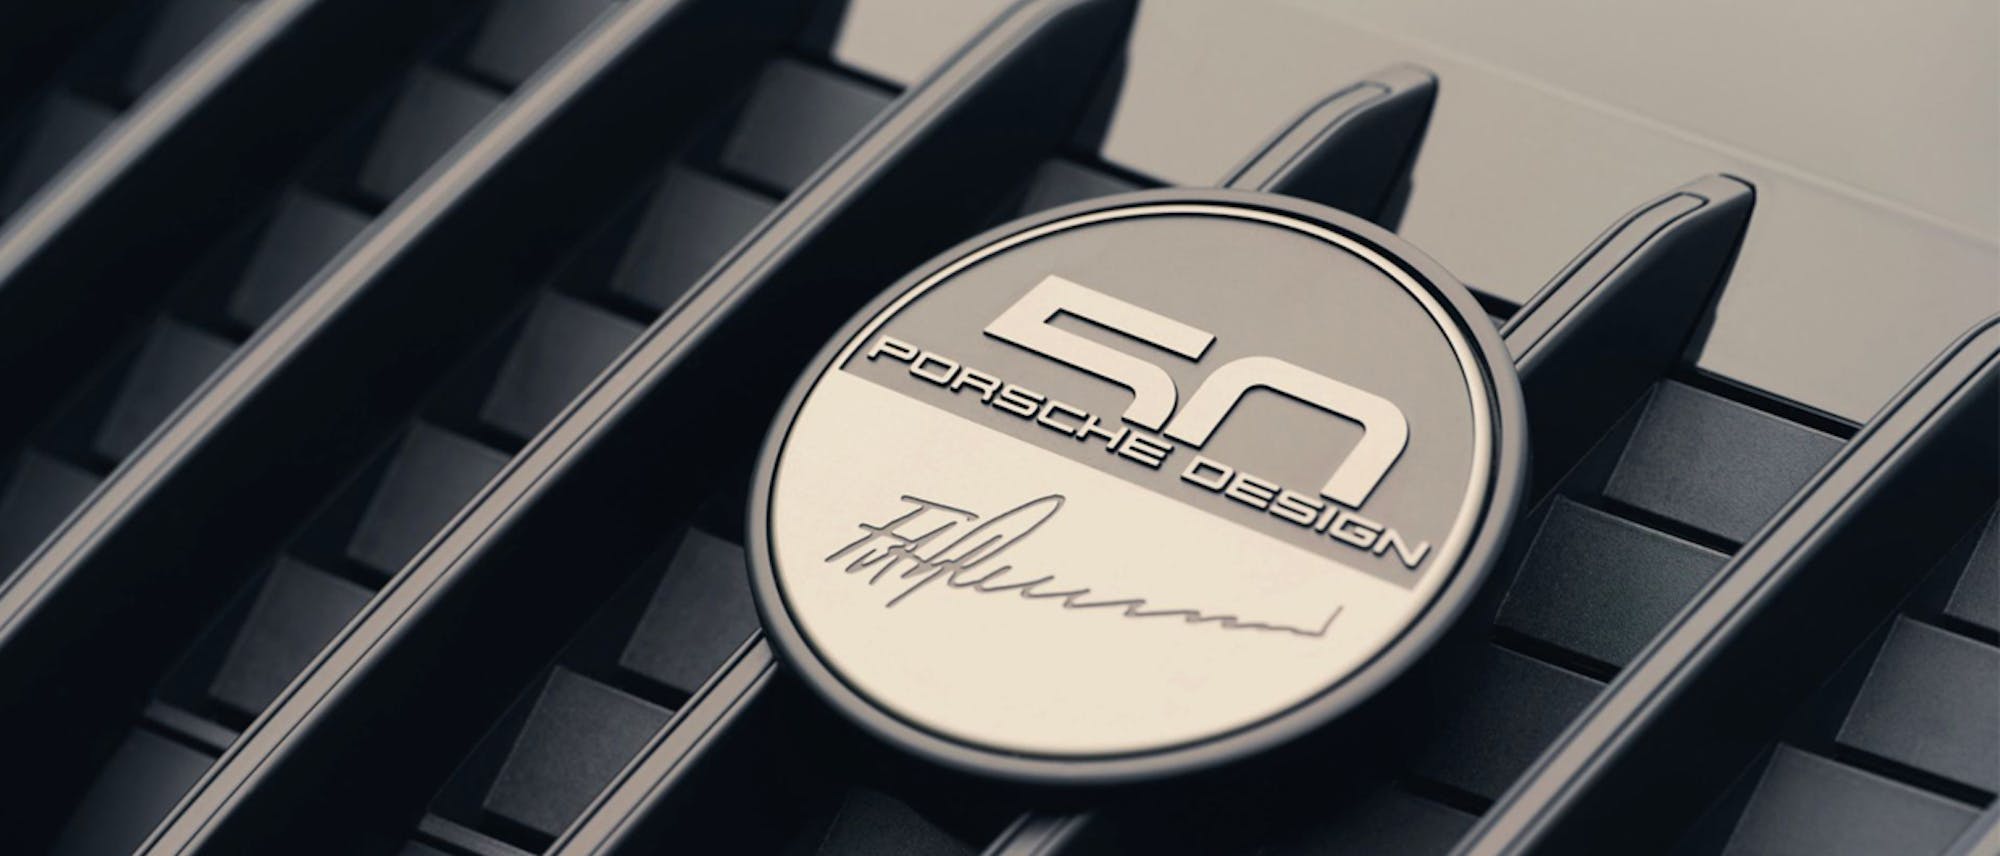 Porsche Design 50th Anniversary badge with F. A. Porsche signature